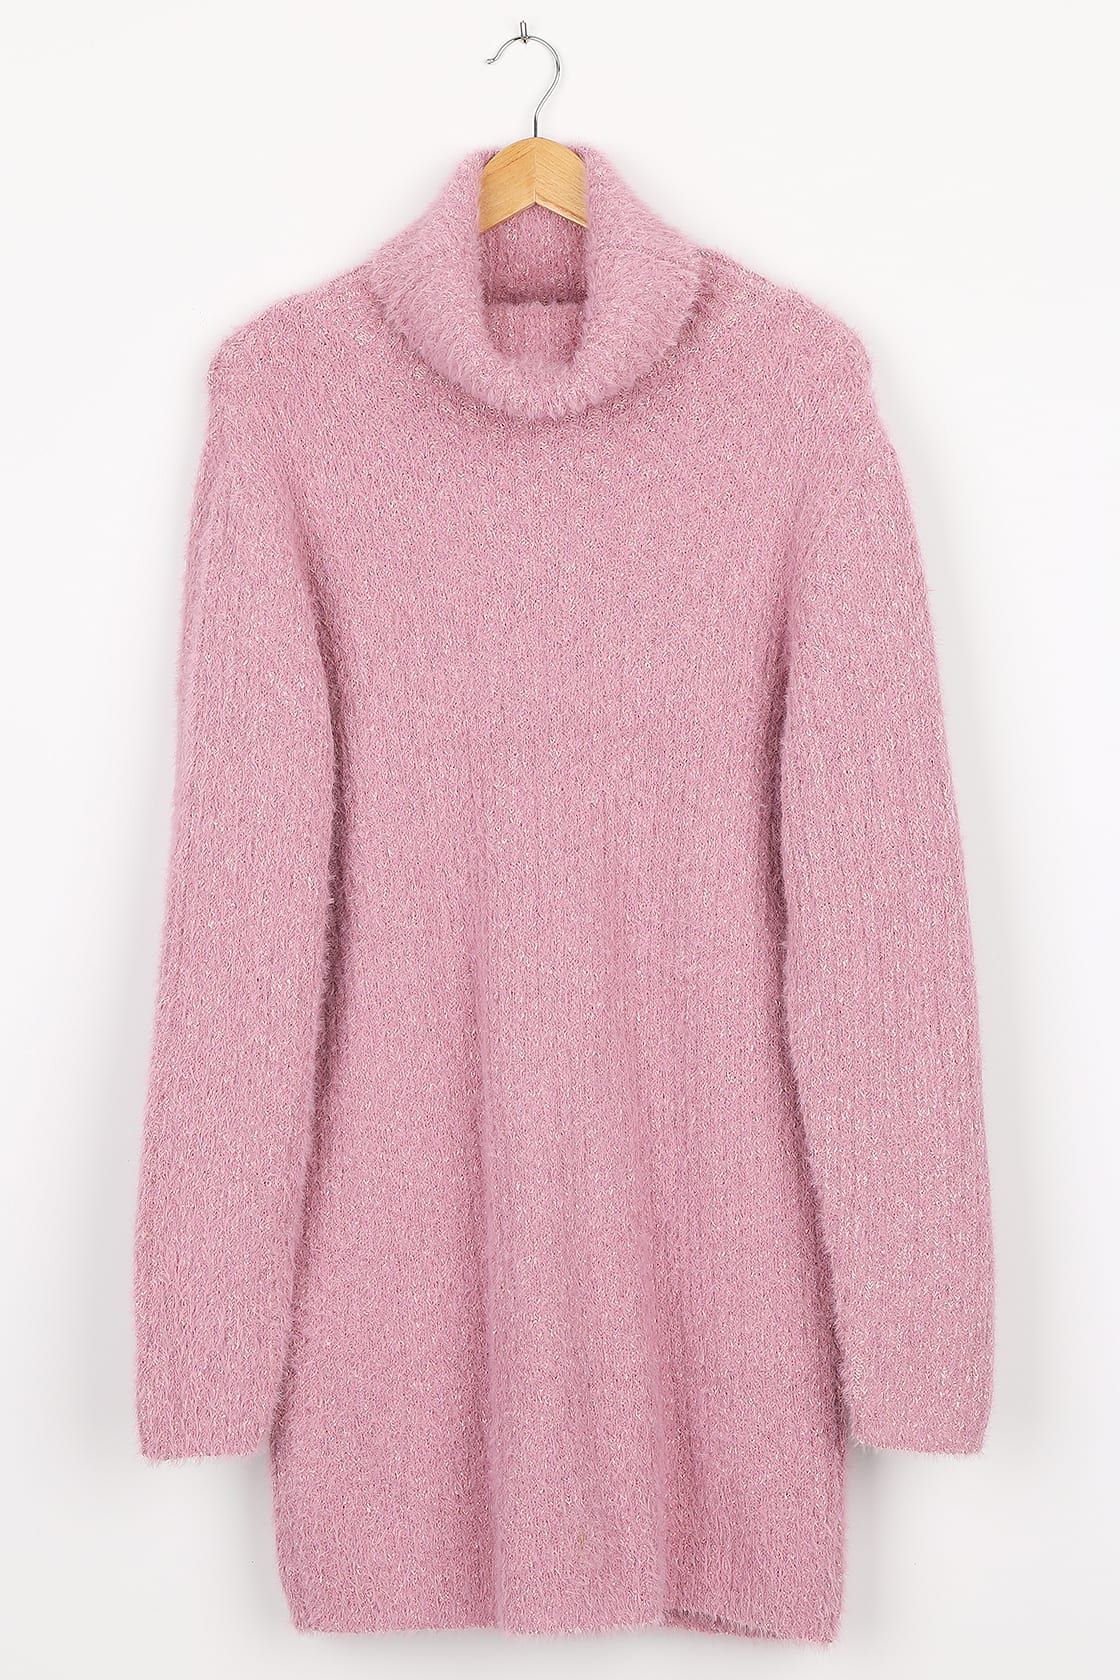 Sweet Whispers Mauve Multi Eyelash Knit Turtleneck Sweater Dress | Lulus (US)